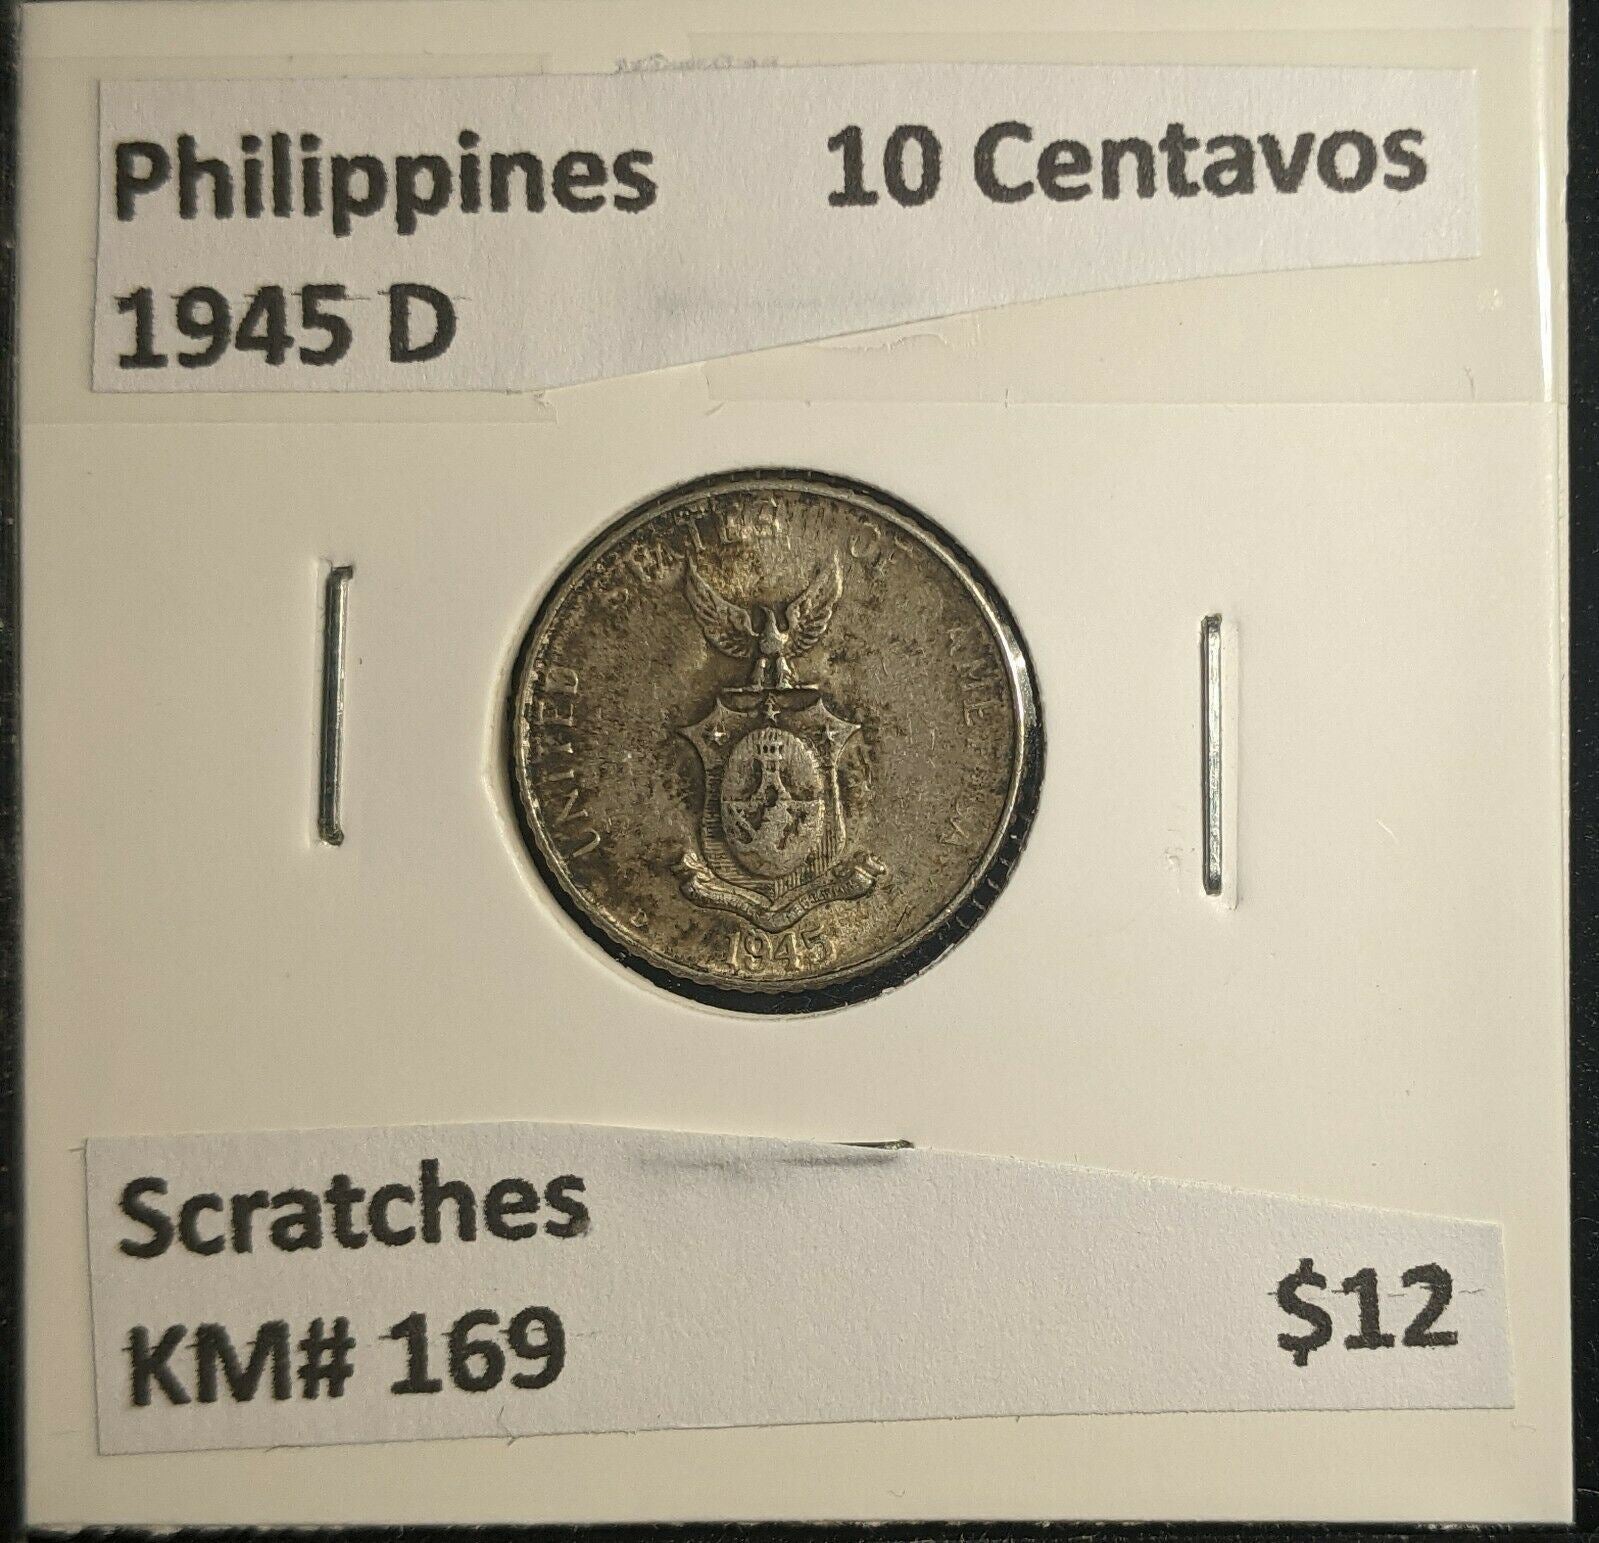 Philippines 1945 D 10 Centavos KM# 169 Scratches #509 5B